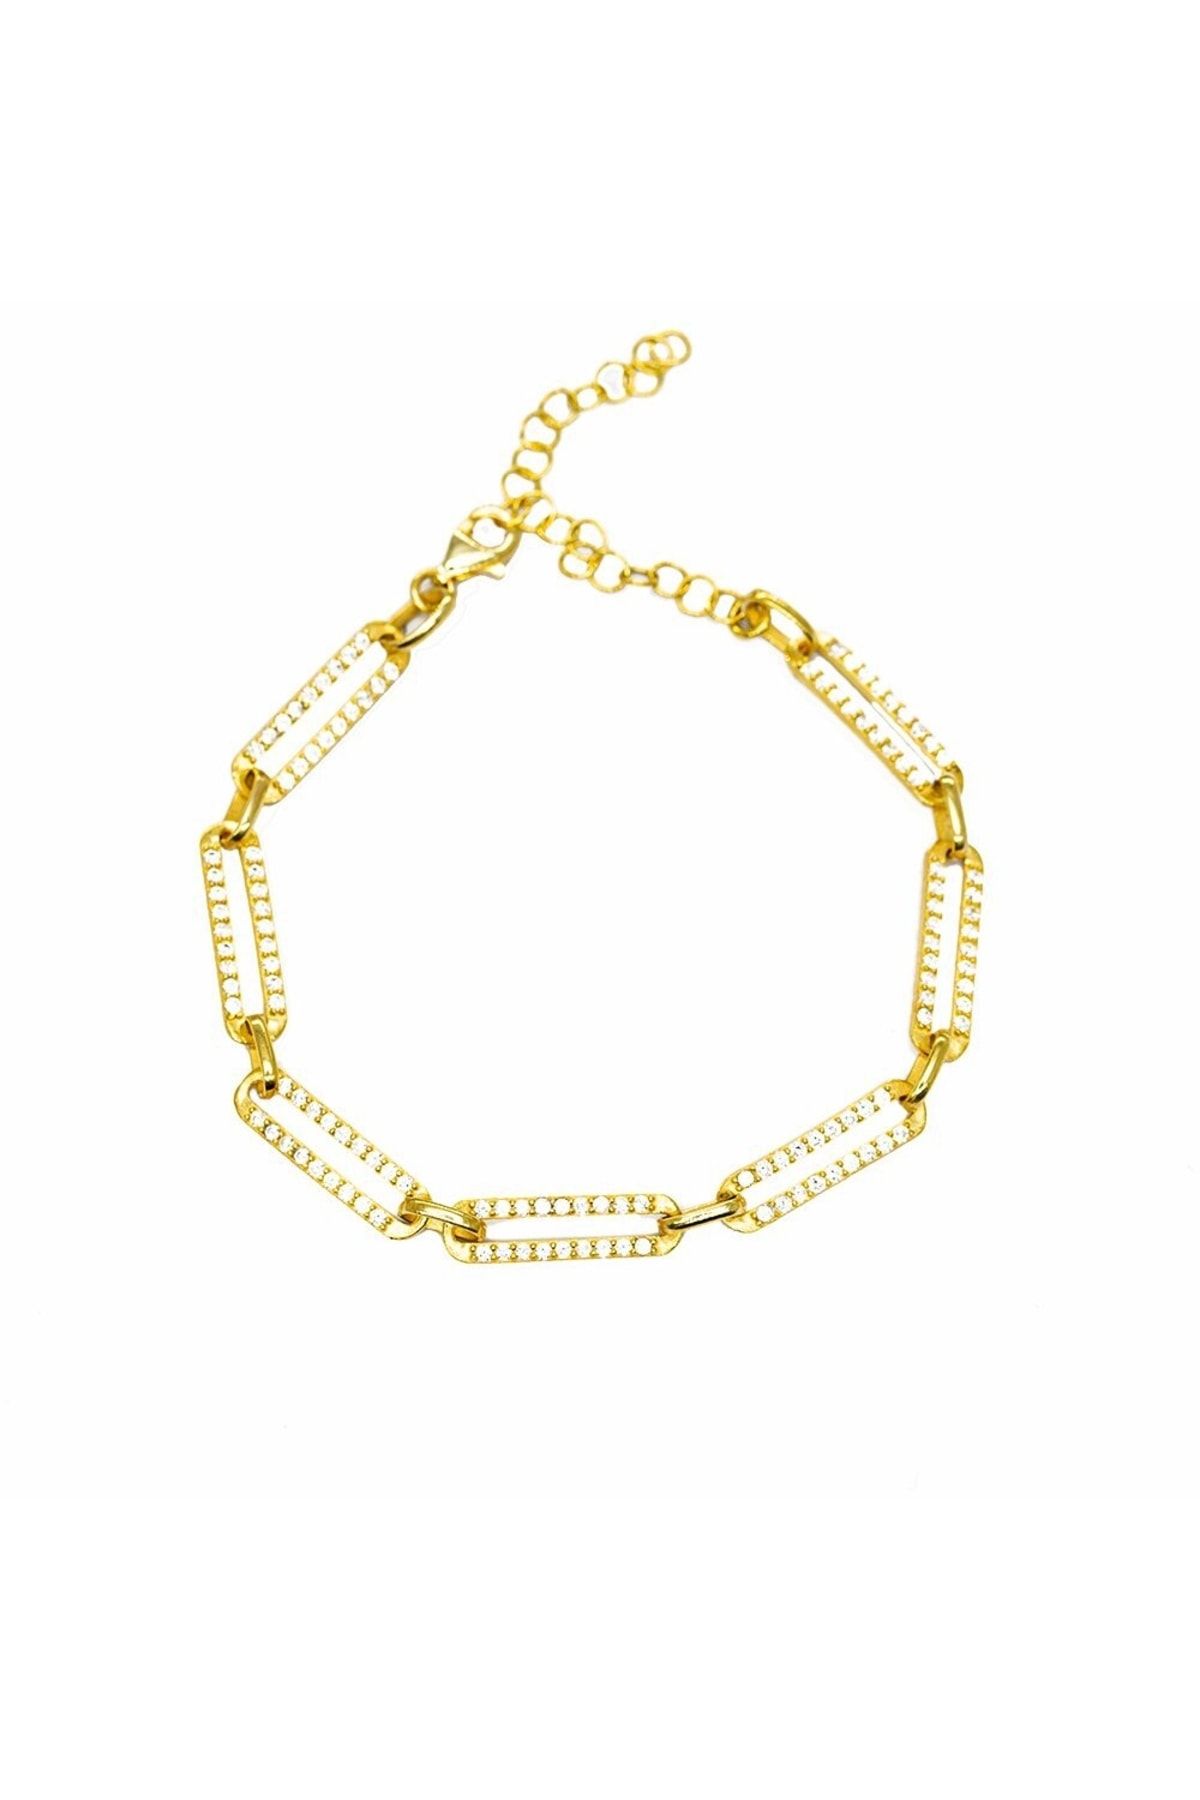 Tesbihane Beyaz Zirkon Taşlı Trend Tasarım Gold Renk 925 Ayar Gümüş Kadın Bileklik